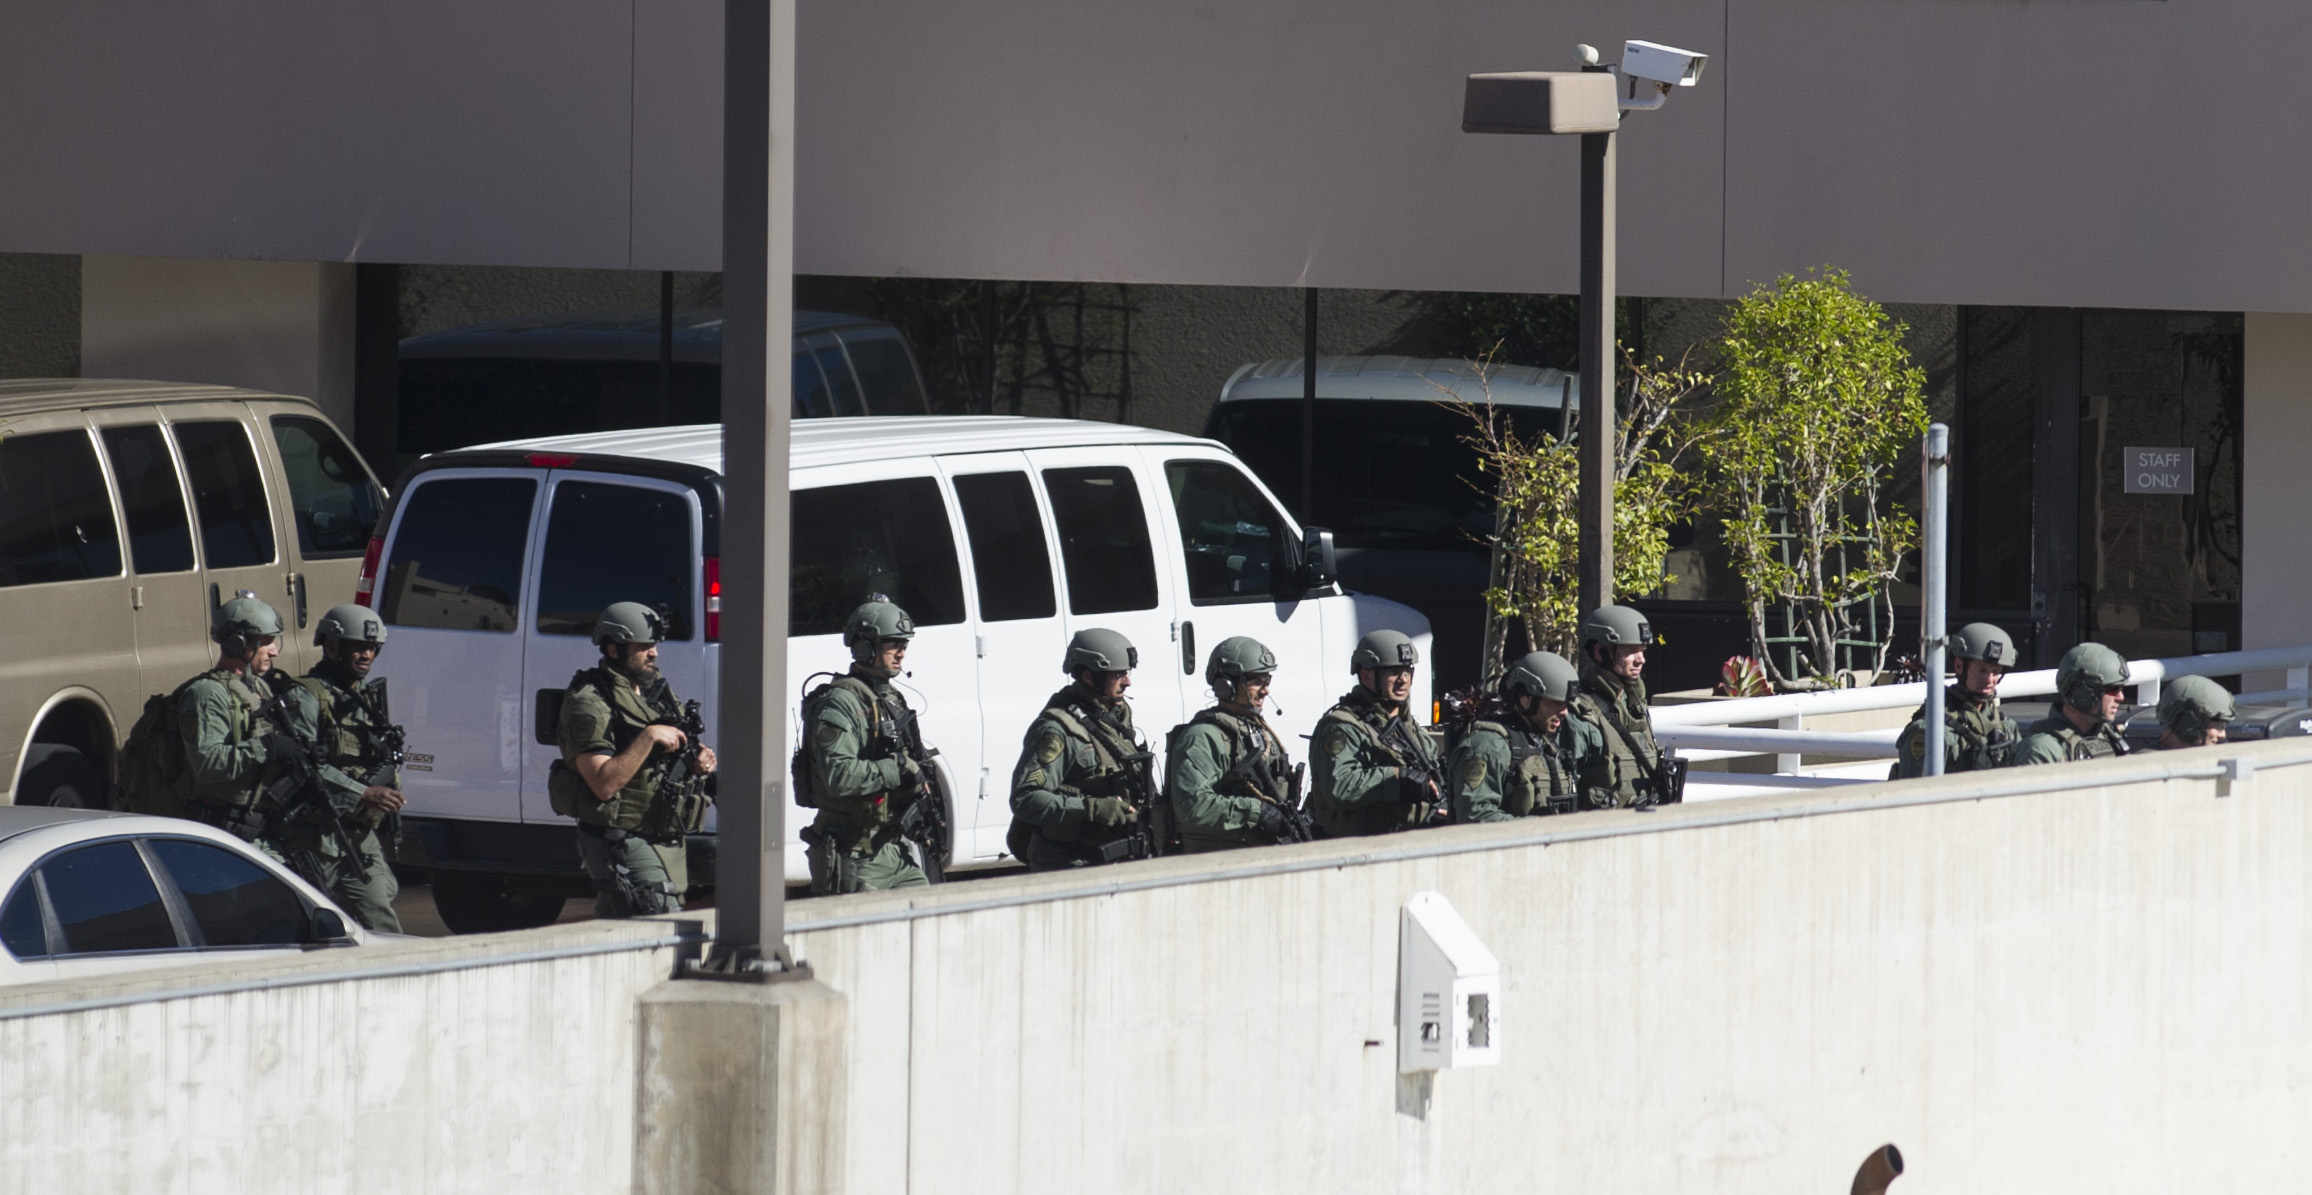 美國加州聖迭戈疑似槍擊事件被確定不屬實